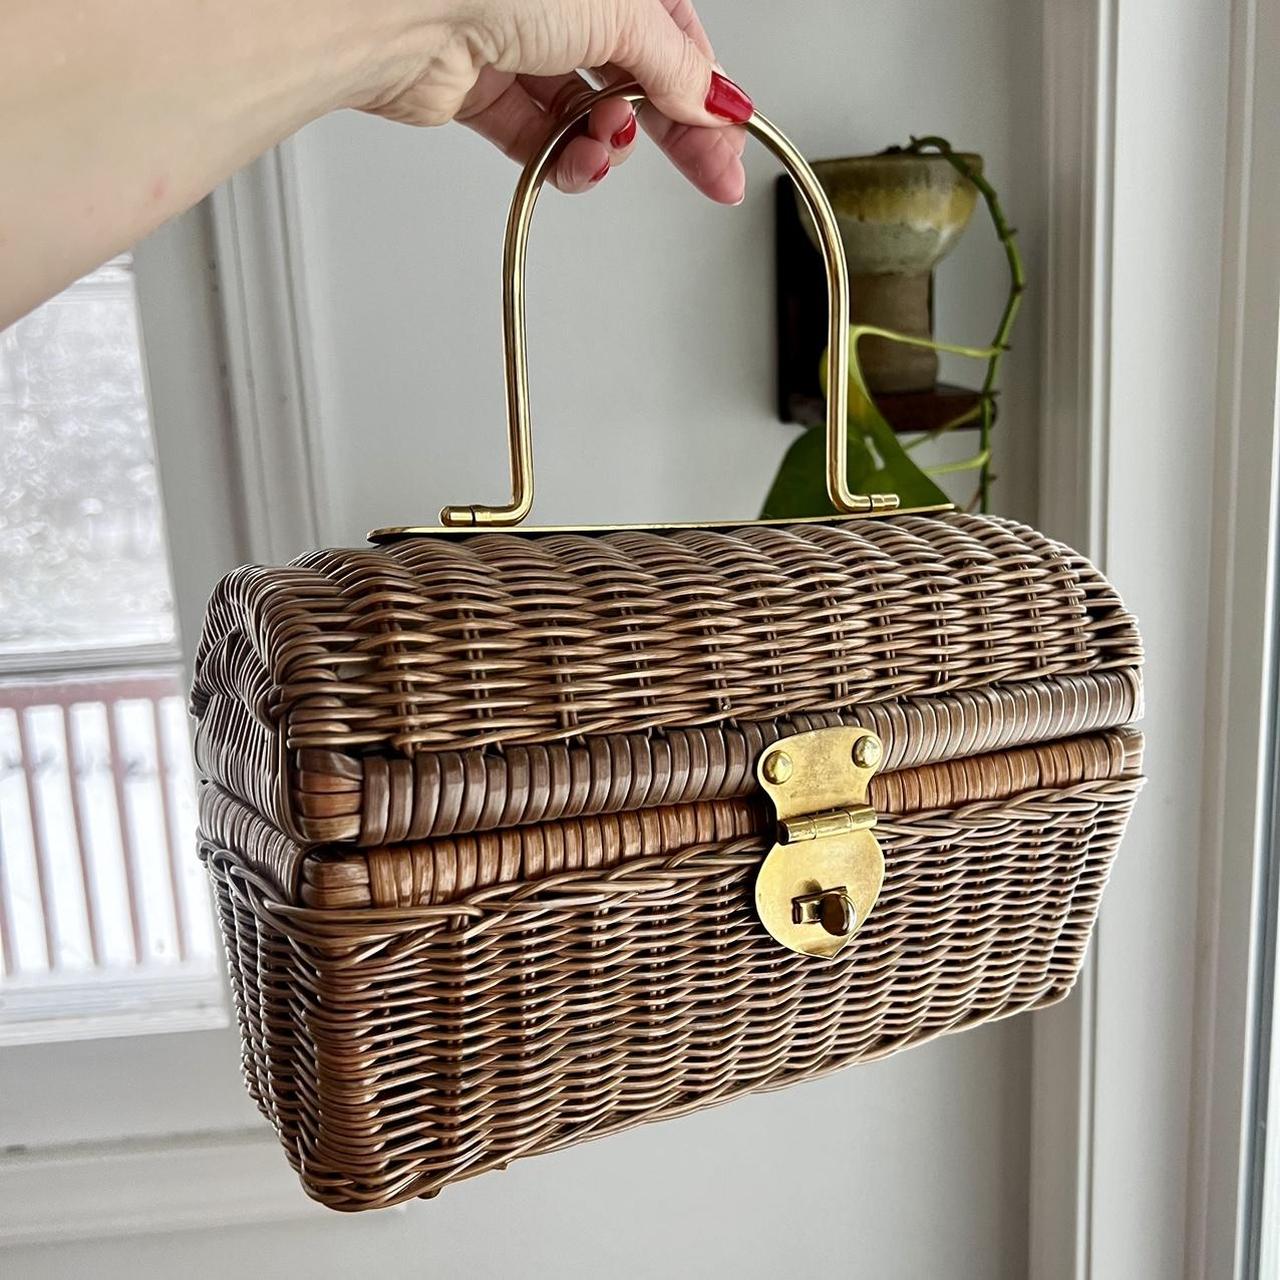 Vintage Wicker Purse Wooden Handle Boho - Women's handbags